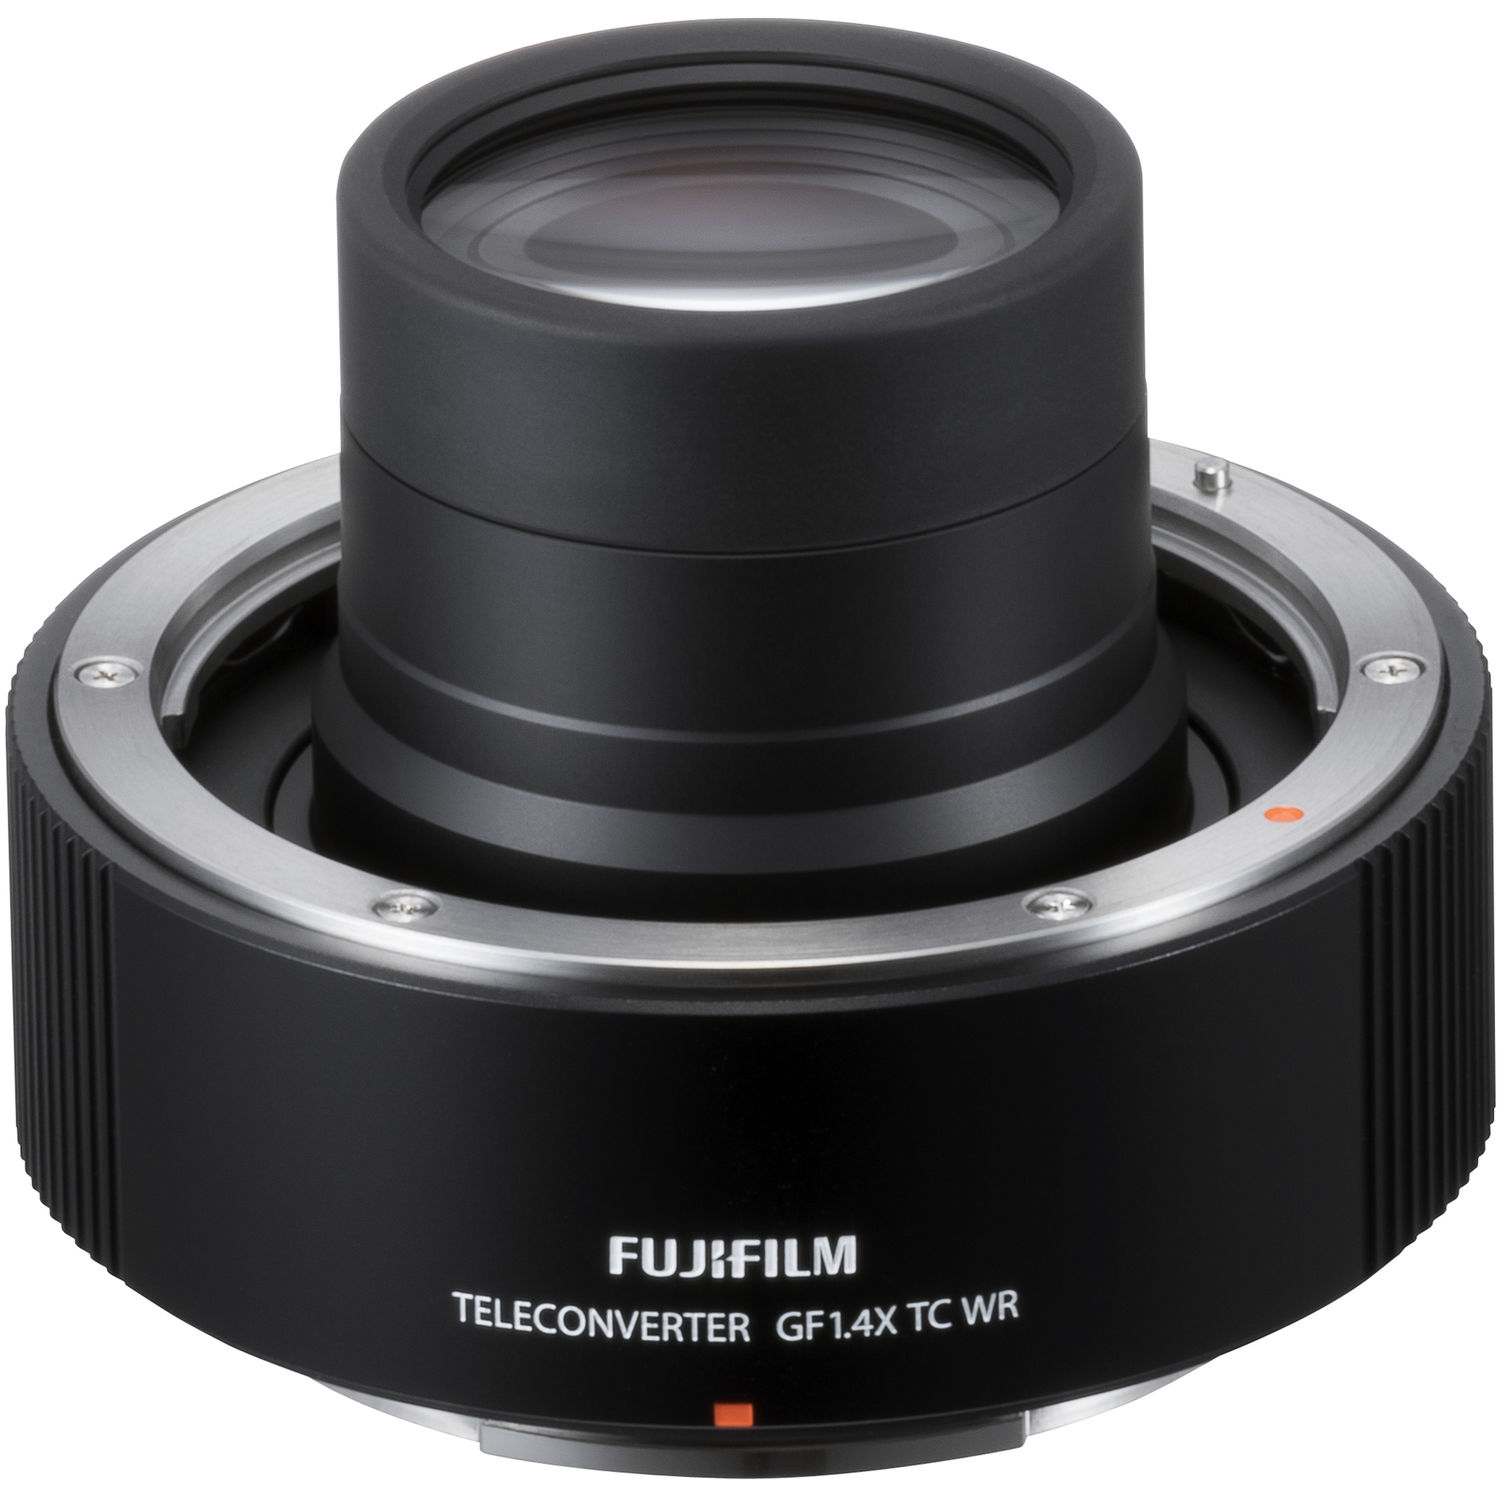 Fujifilm 1.4x TC WR GF Teleconverter